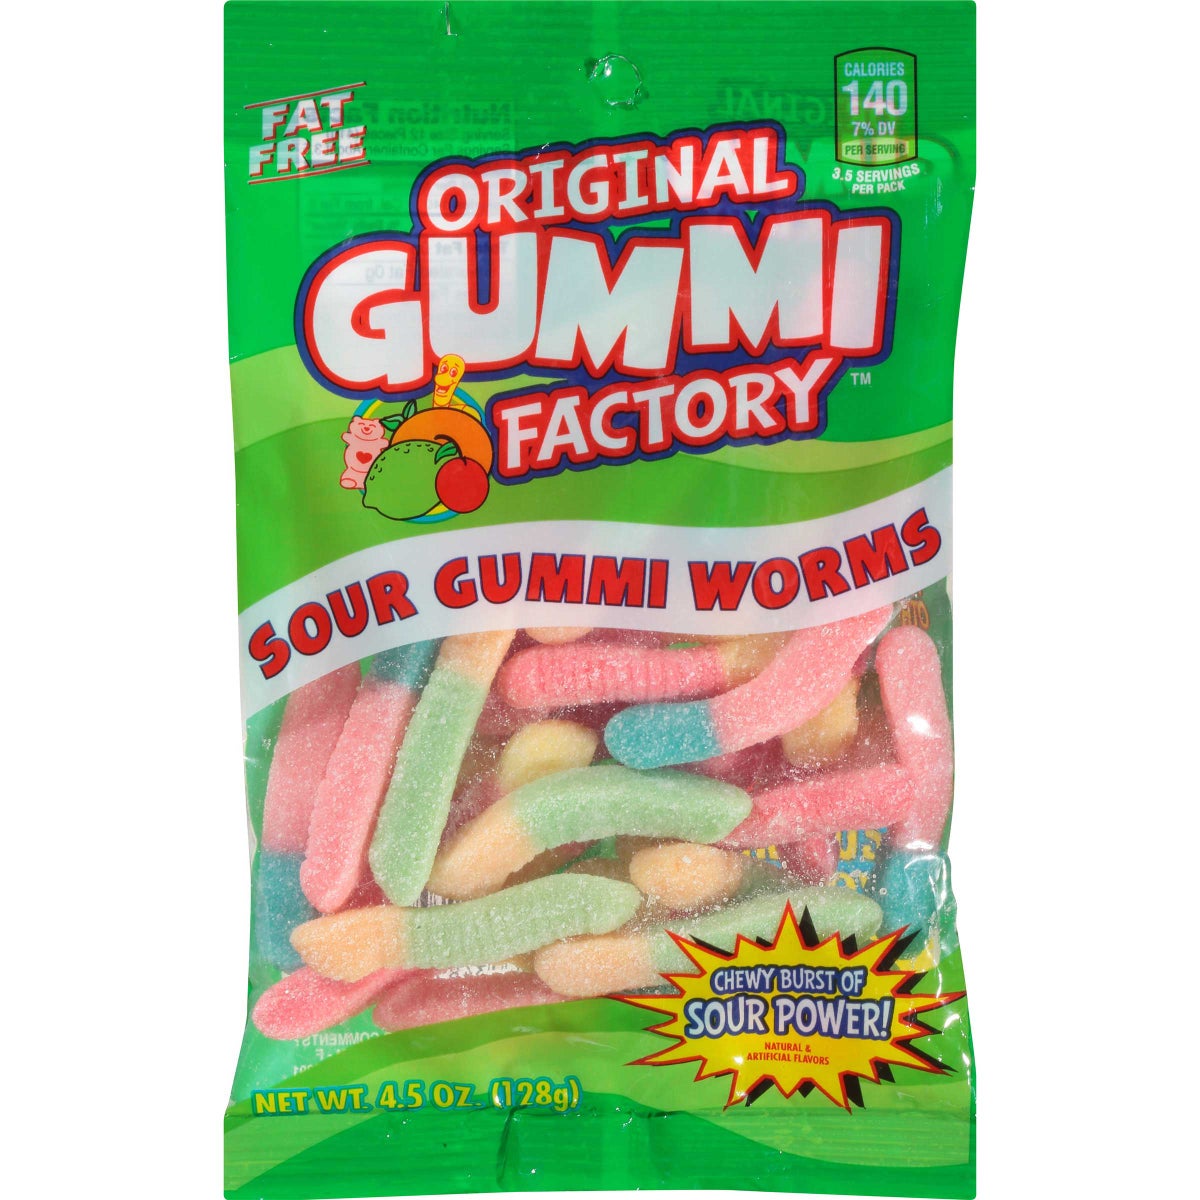 Original Gummi Factory Sour Gummi Worms 4.5 Oz Bag